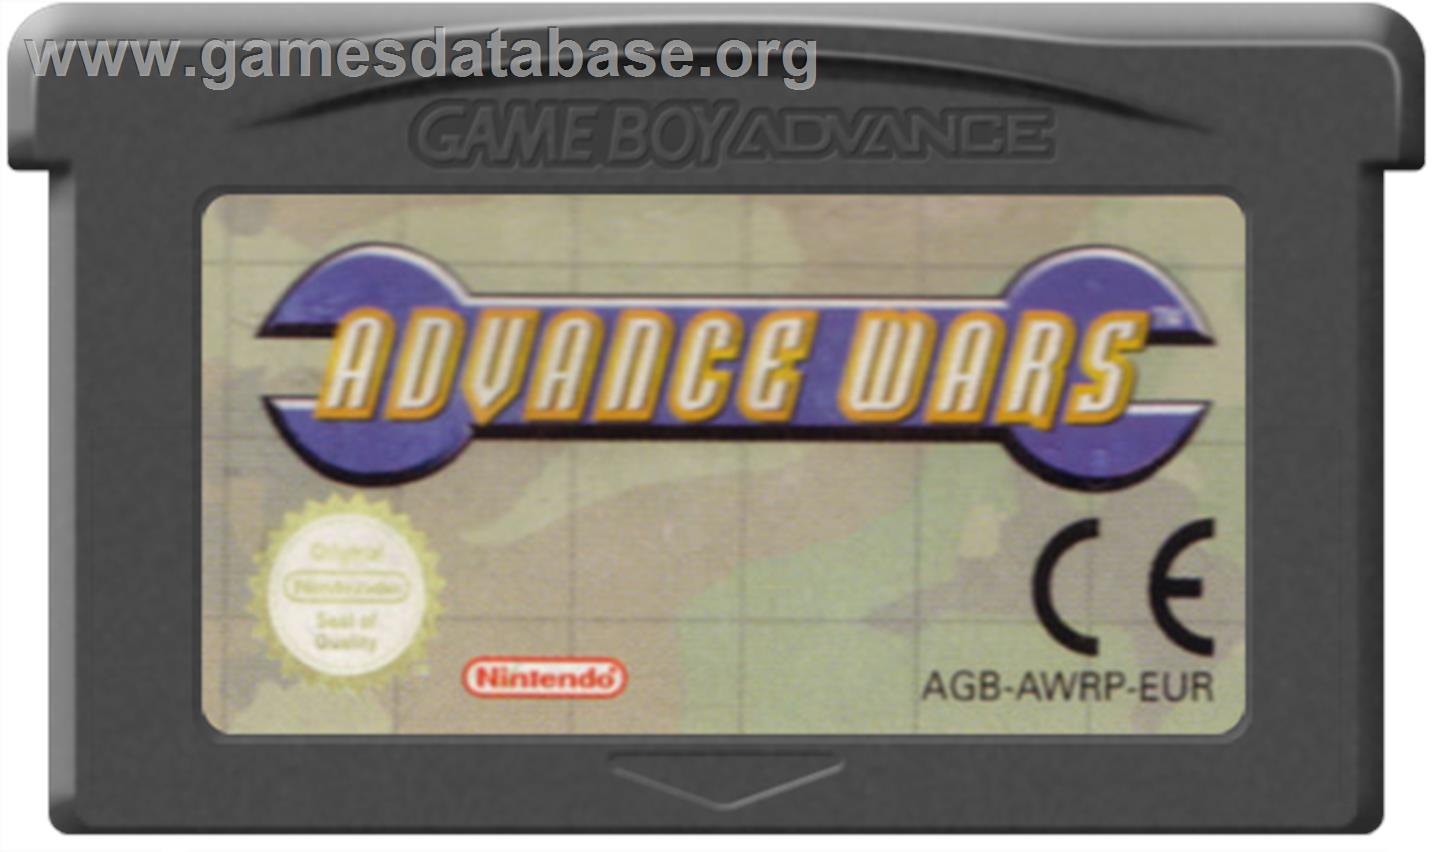 Advance Wars - Nintendo Game Boy Advance - Artwork - Cartridge